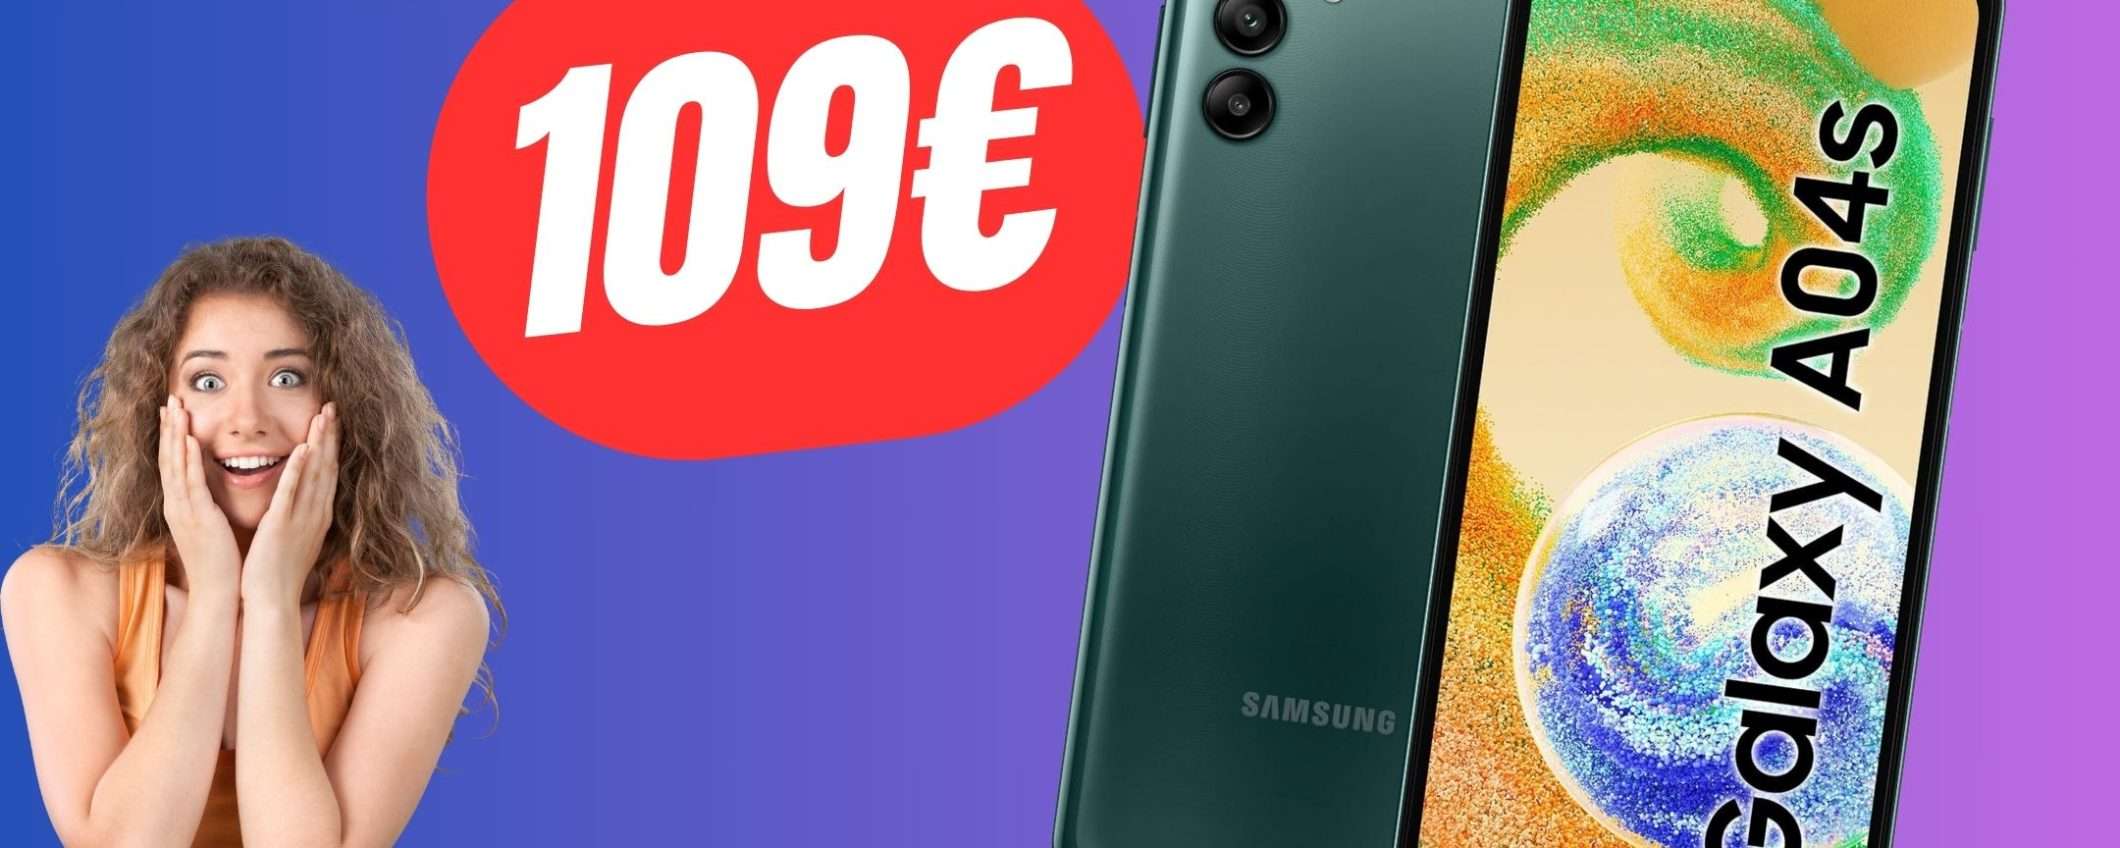 Questo smartphone Samsung è una BOMBA per poco più di 100€!